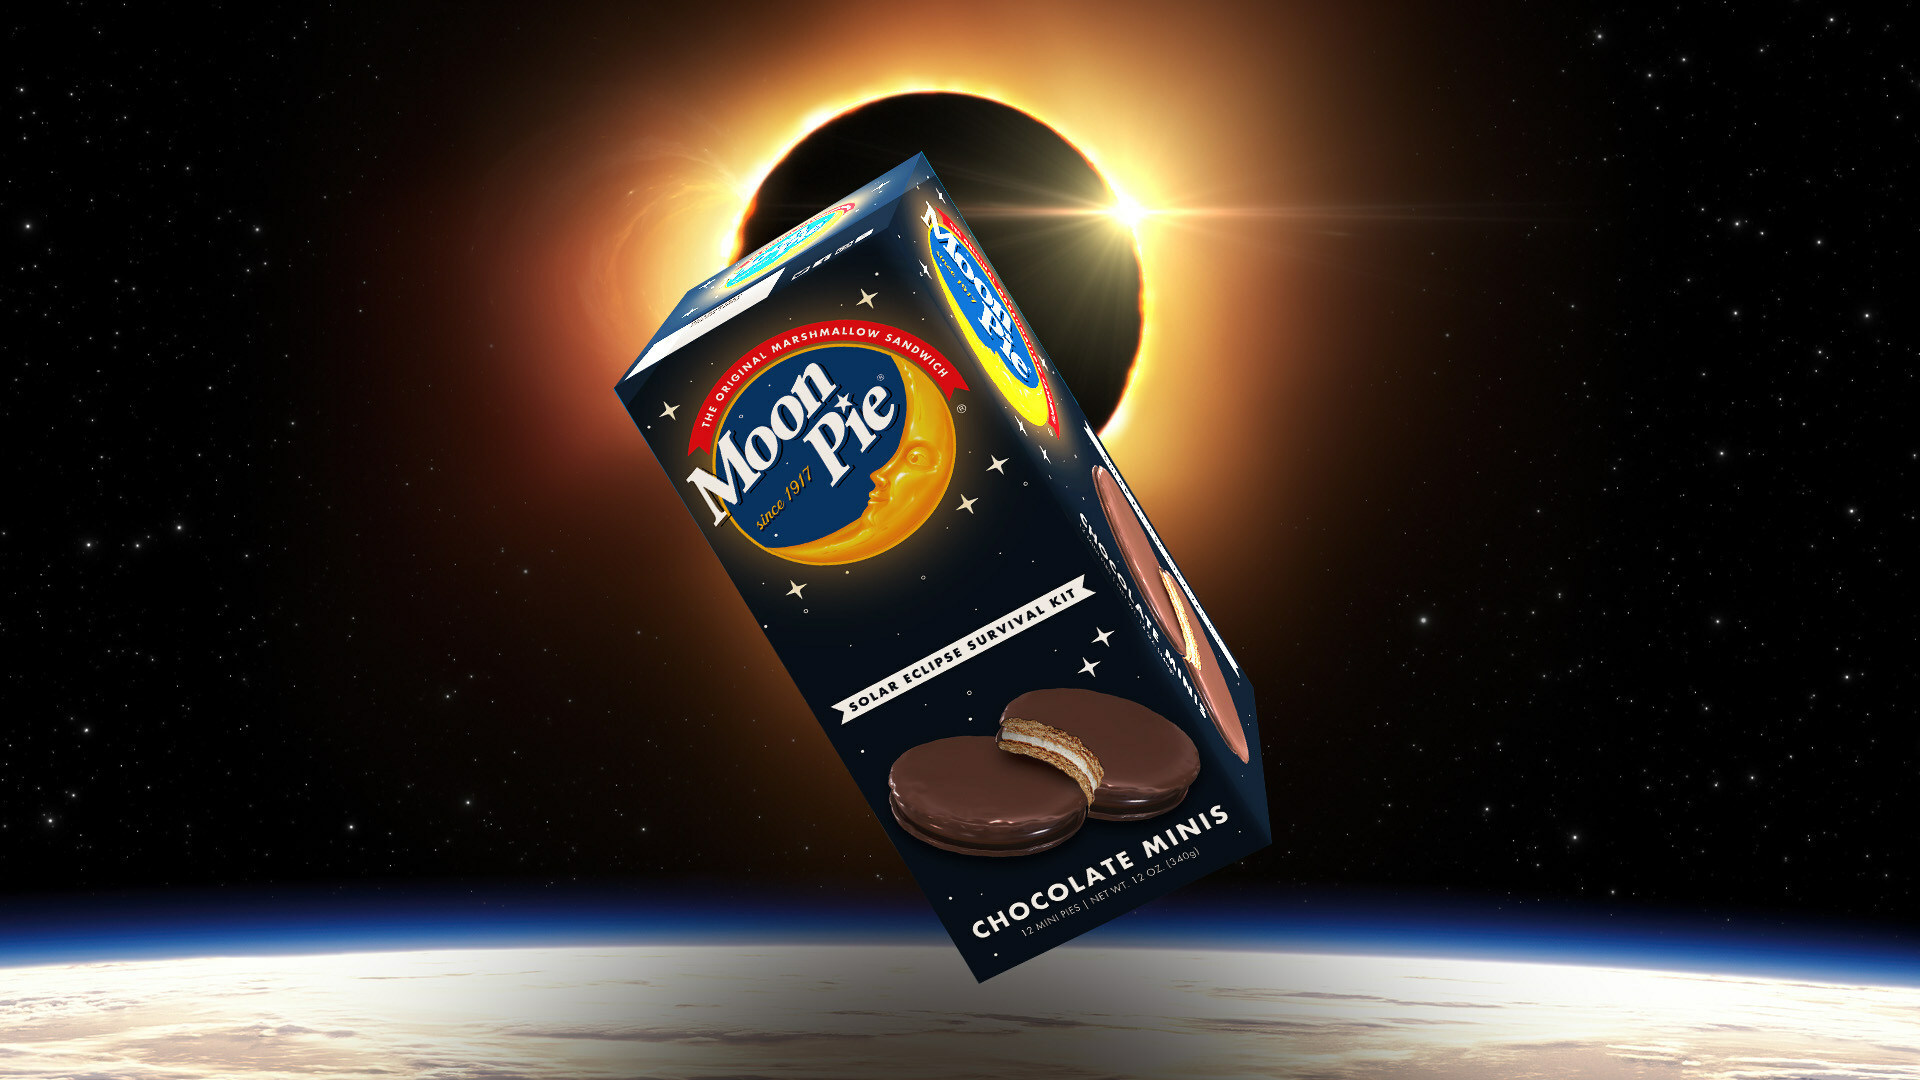 MoonPie Announces ‘Solar Eclipse Survival Kits’